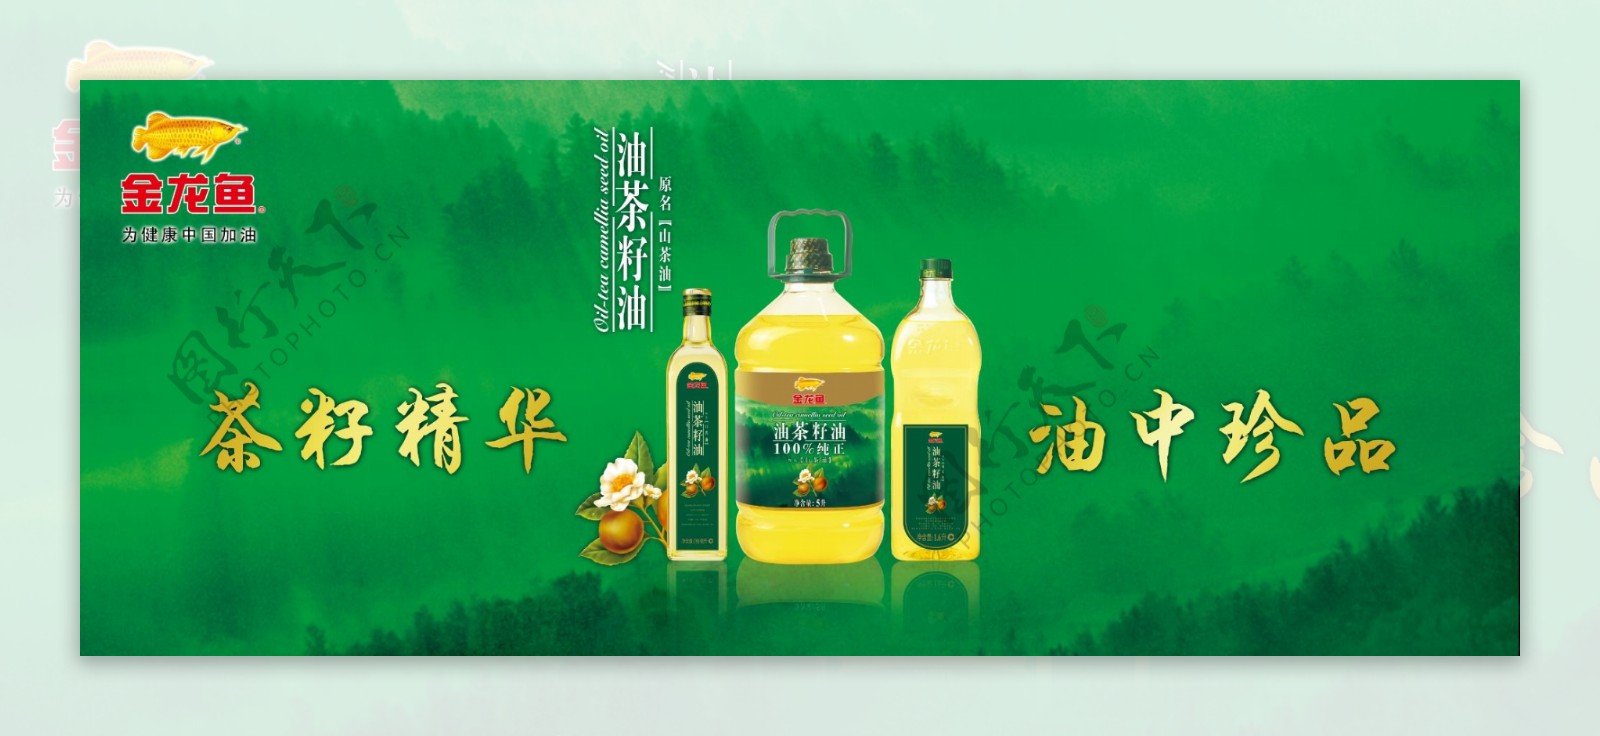 金龙鱼茶籽油广告